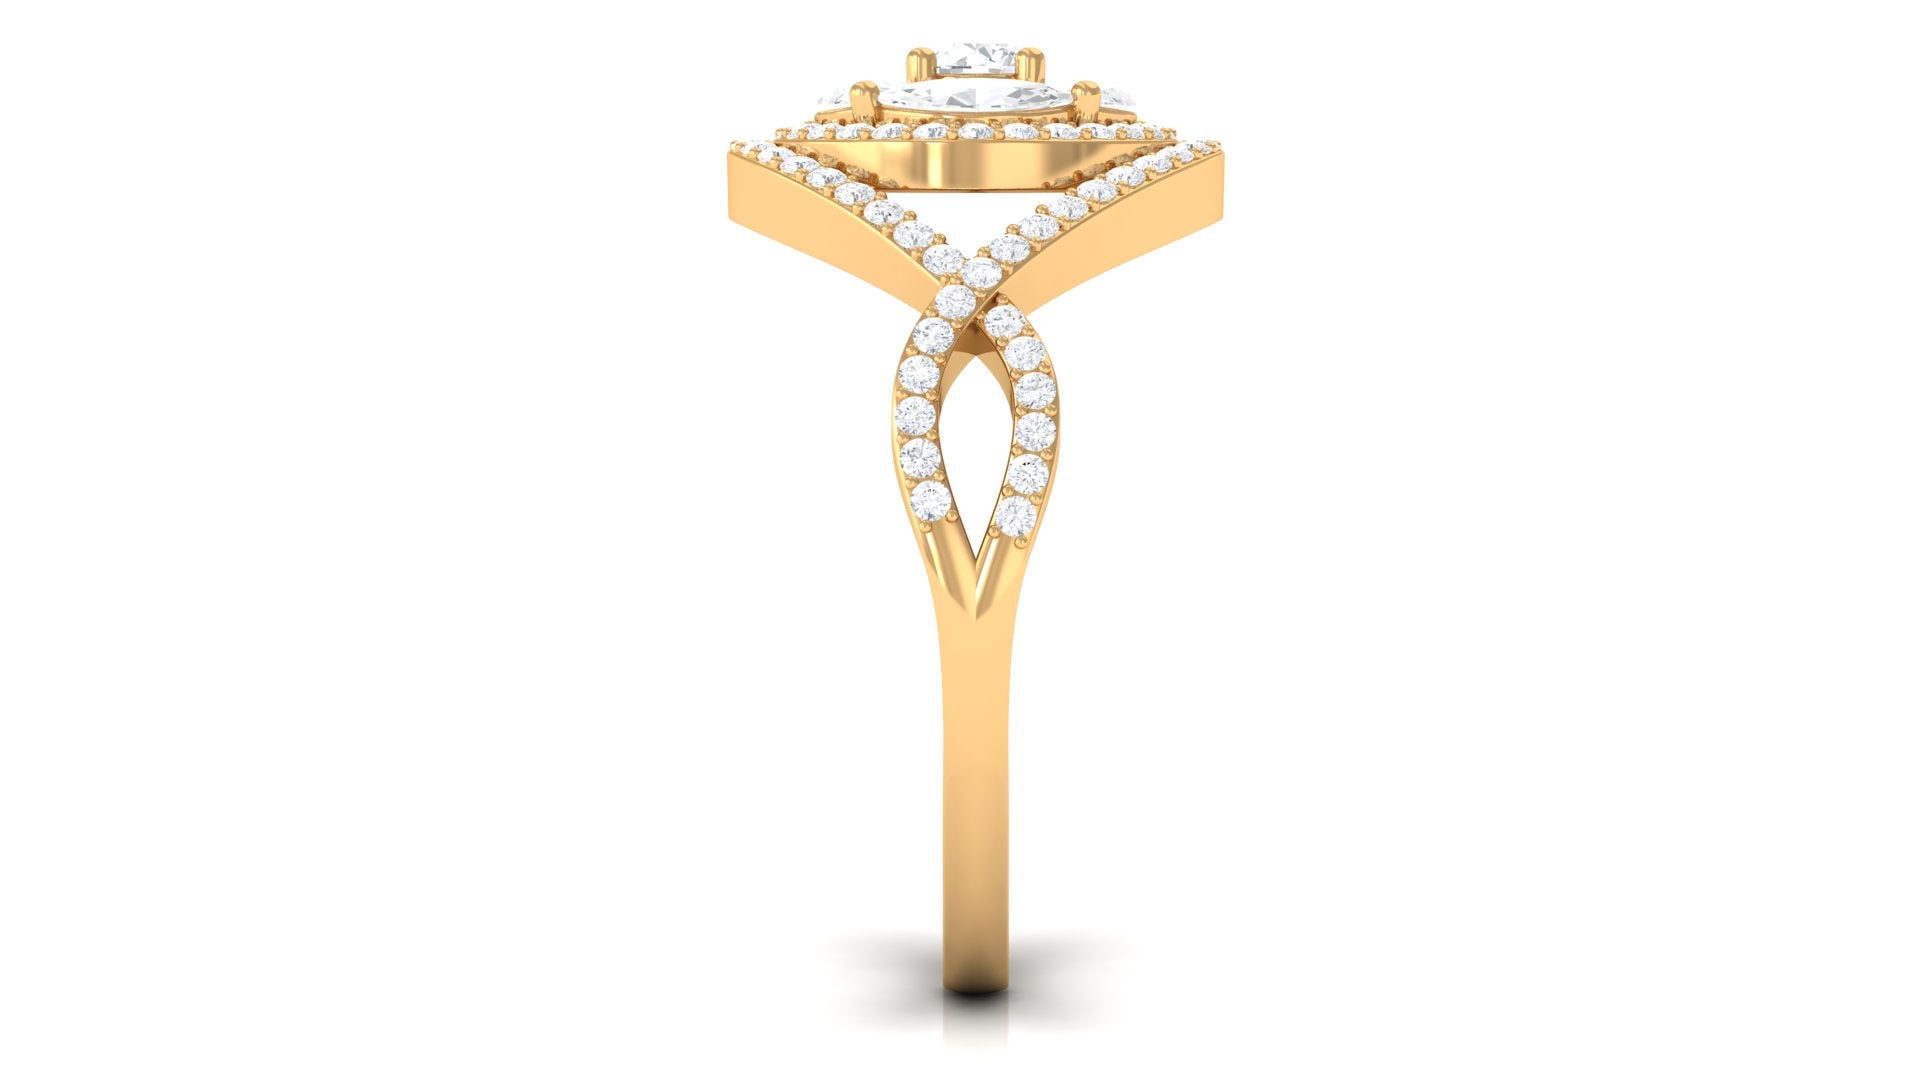 Criss Cross Zircon Cluster Engagement Ring Zircon - ( AAAA ) - Quality - Rosec Jewels